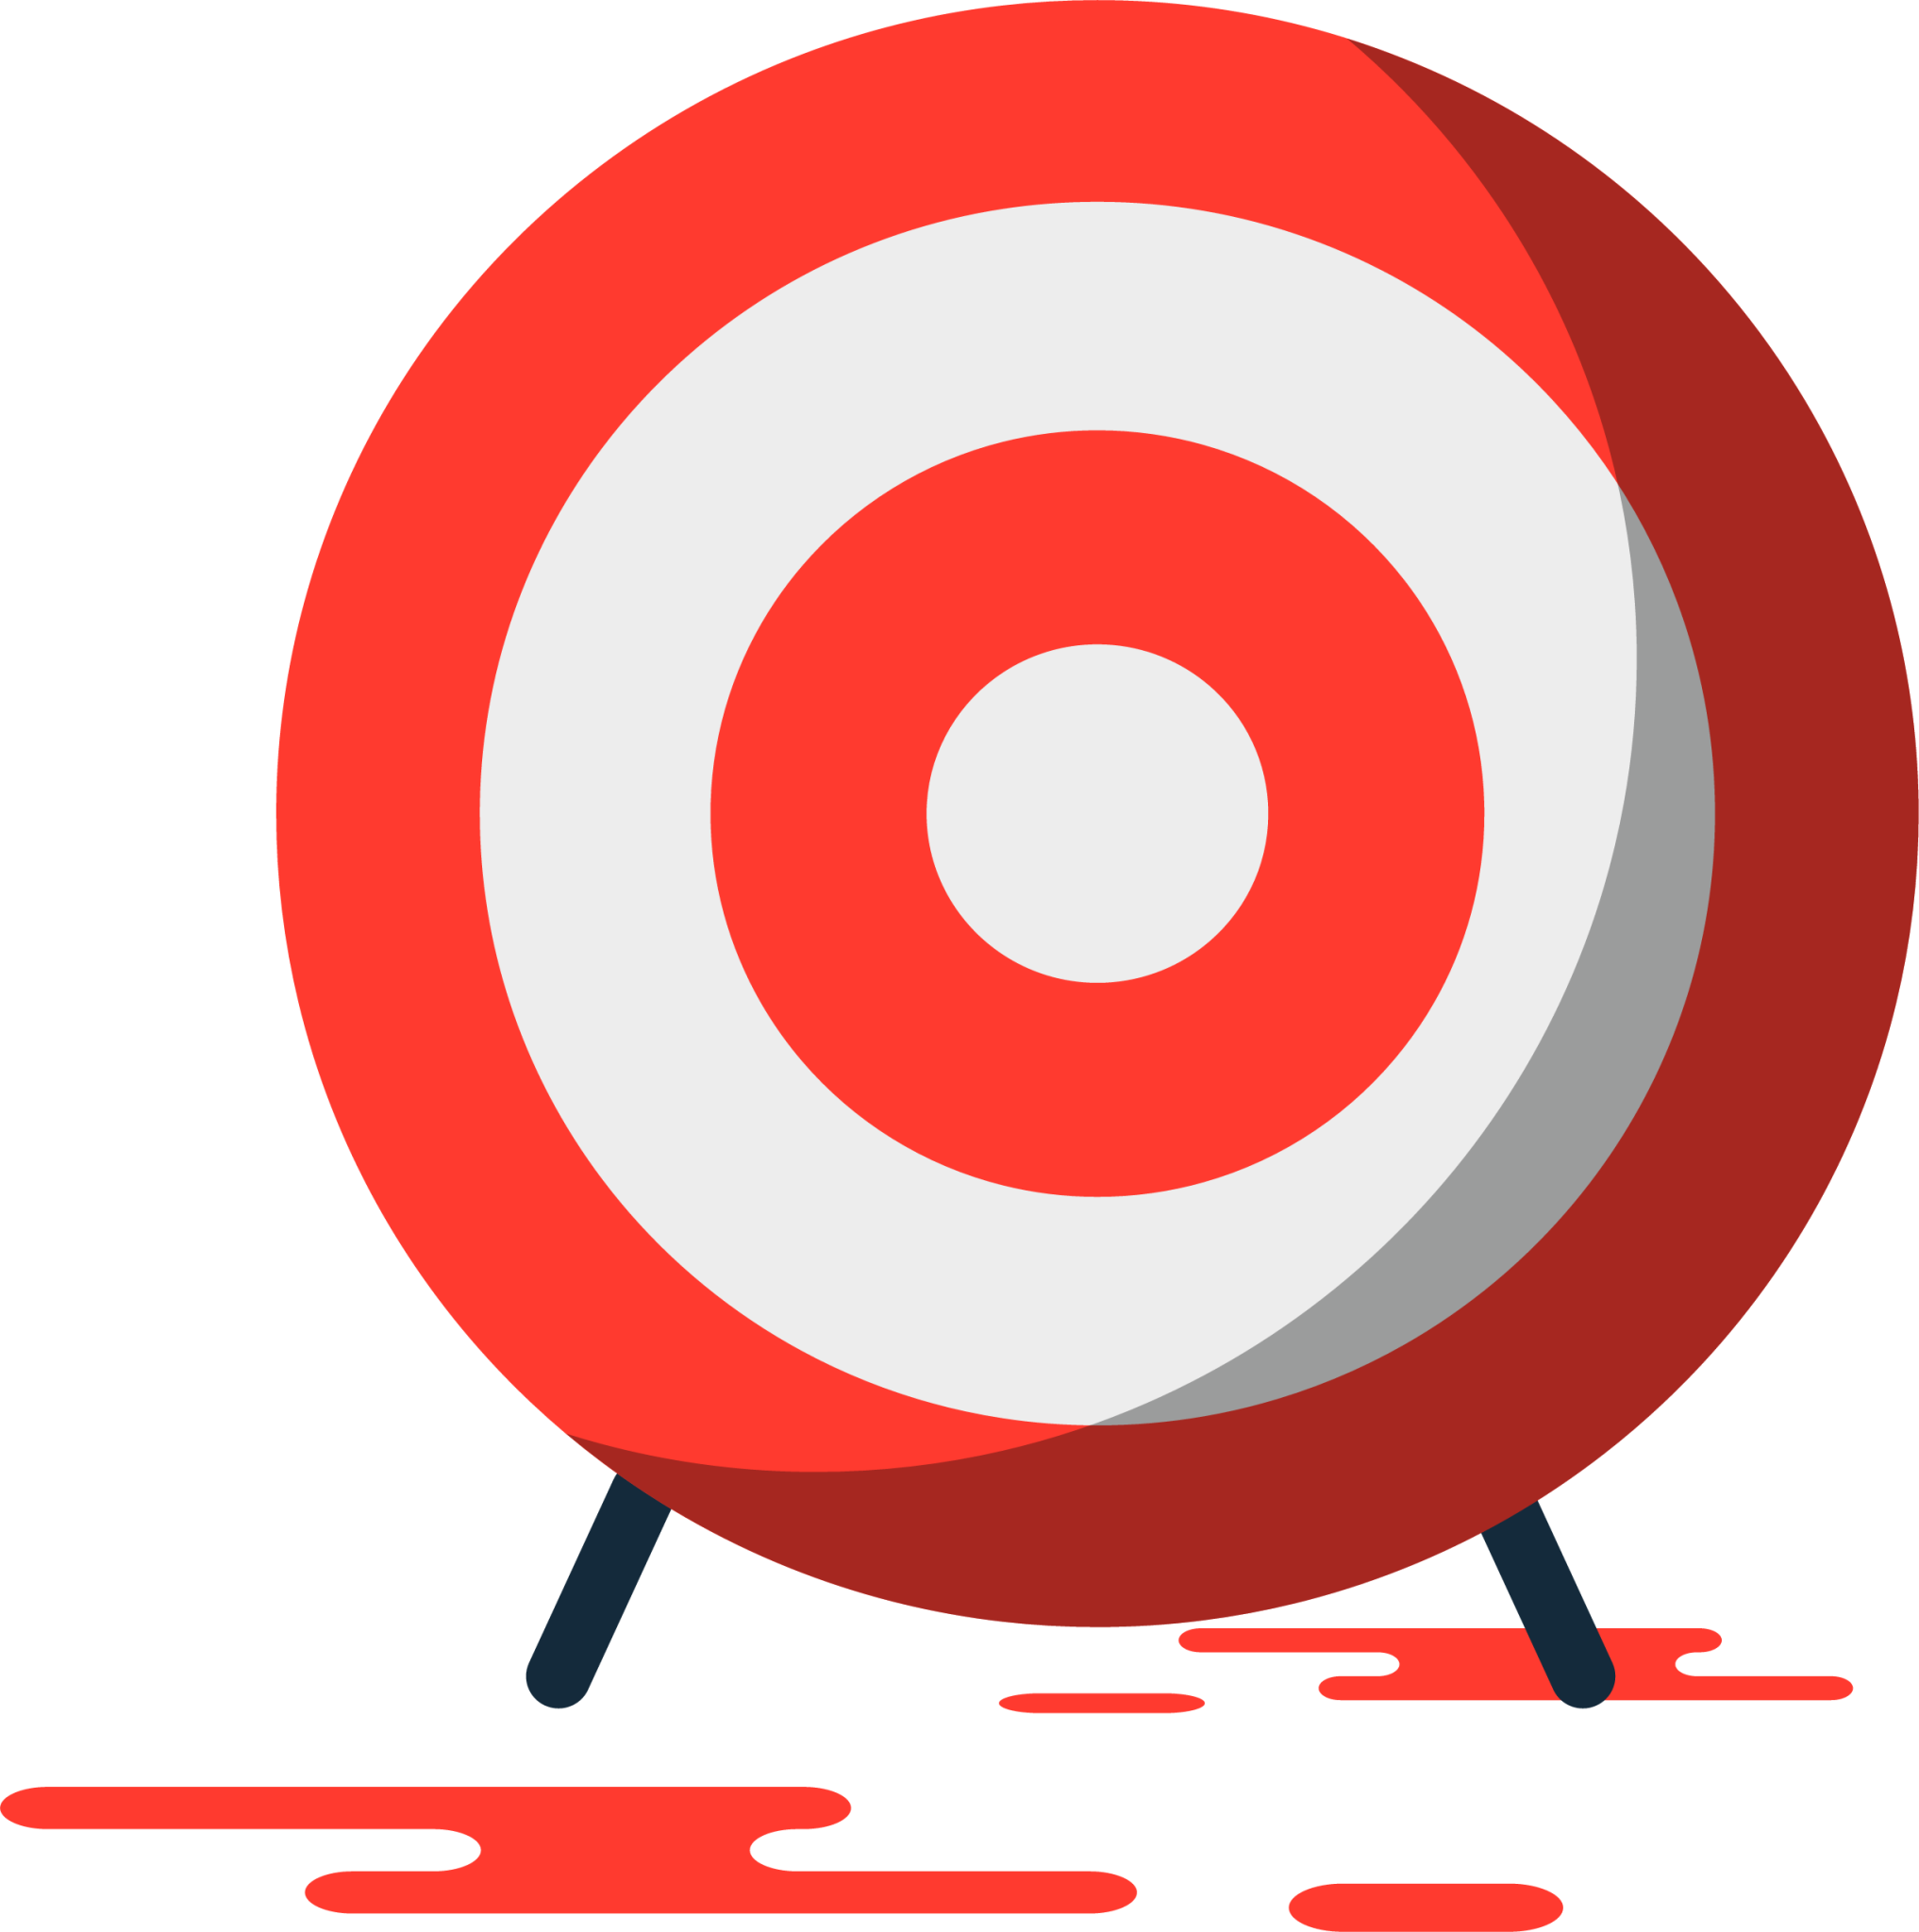 target aim illustration